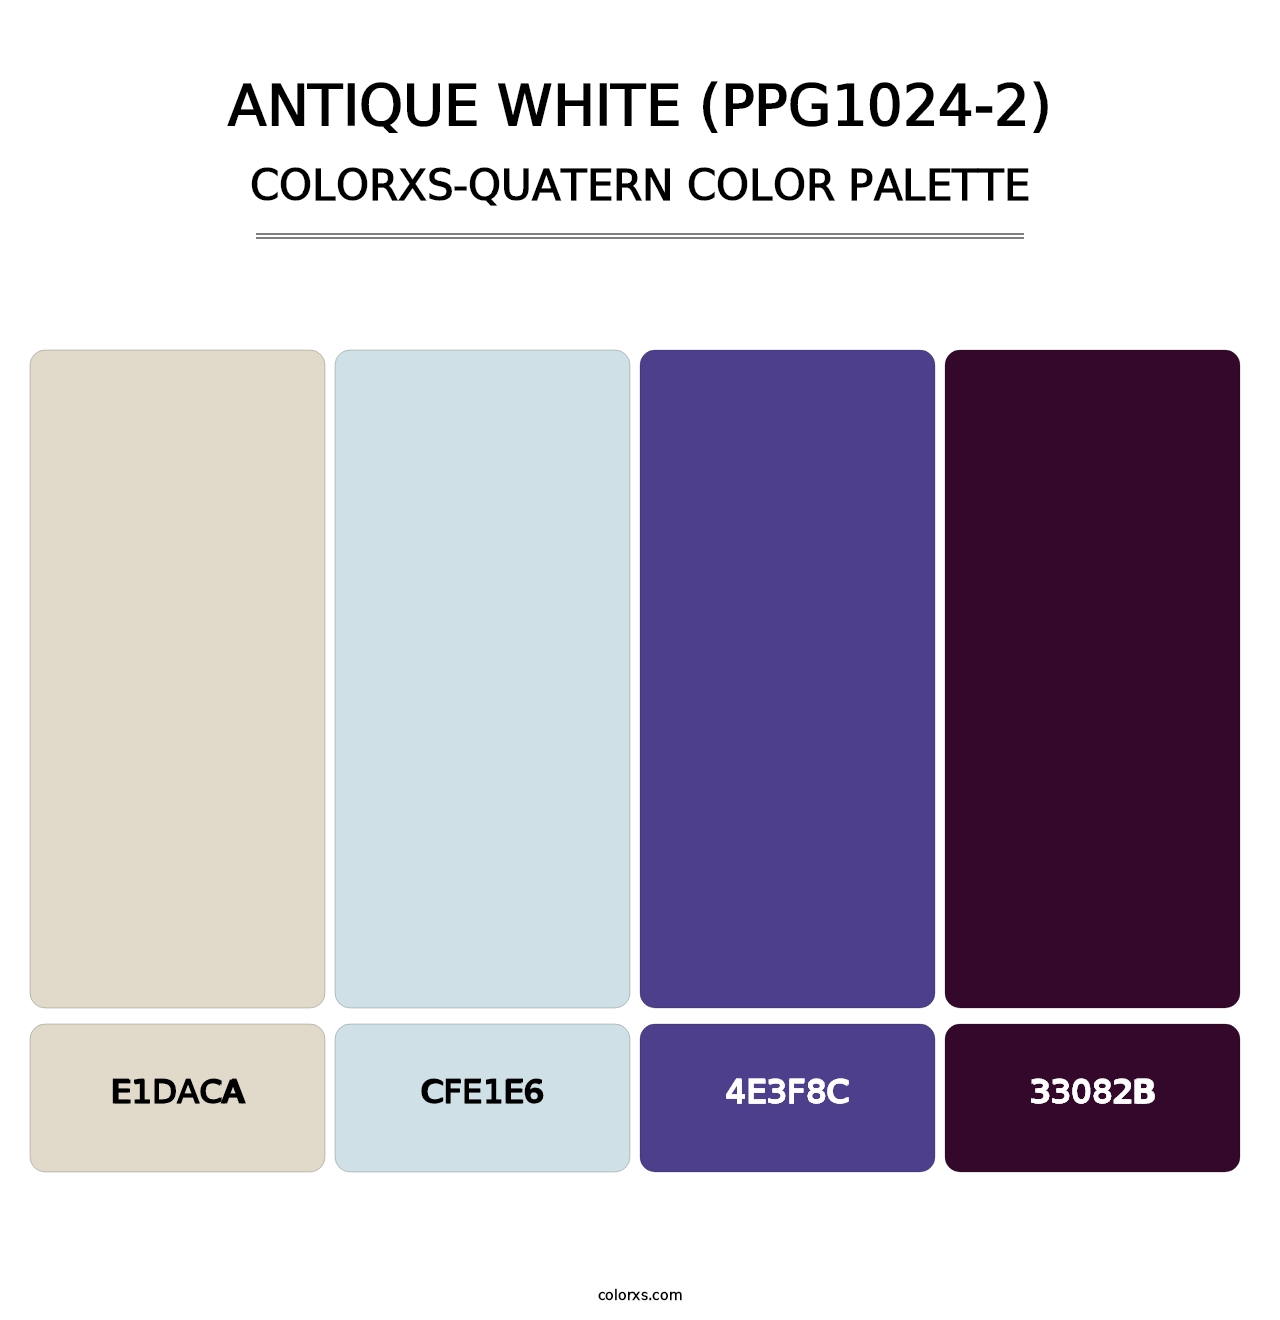 Antique White (PPG1024-2) - Colorxs Quatern Palette